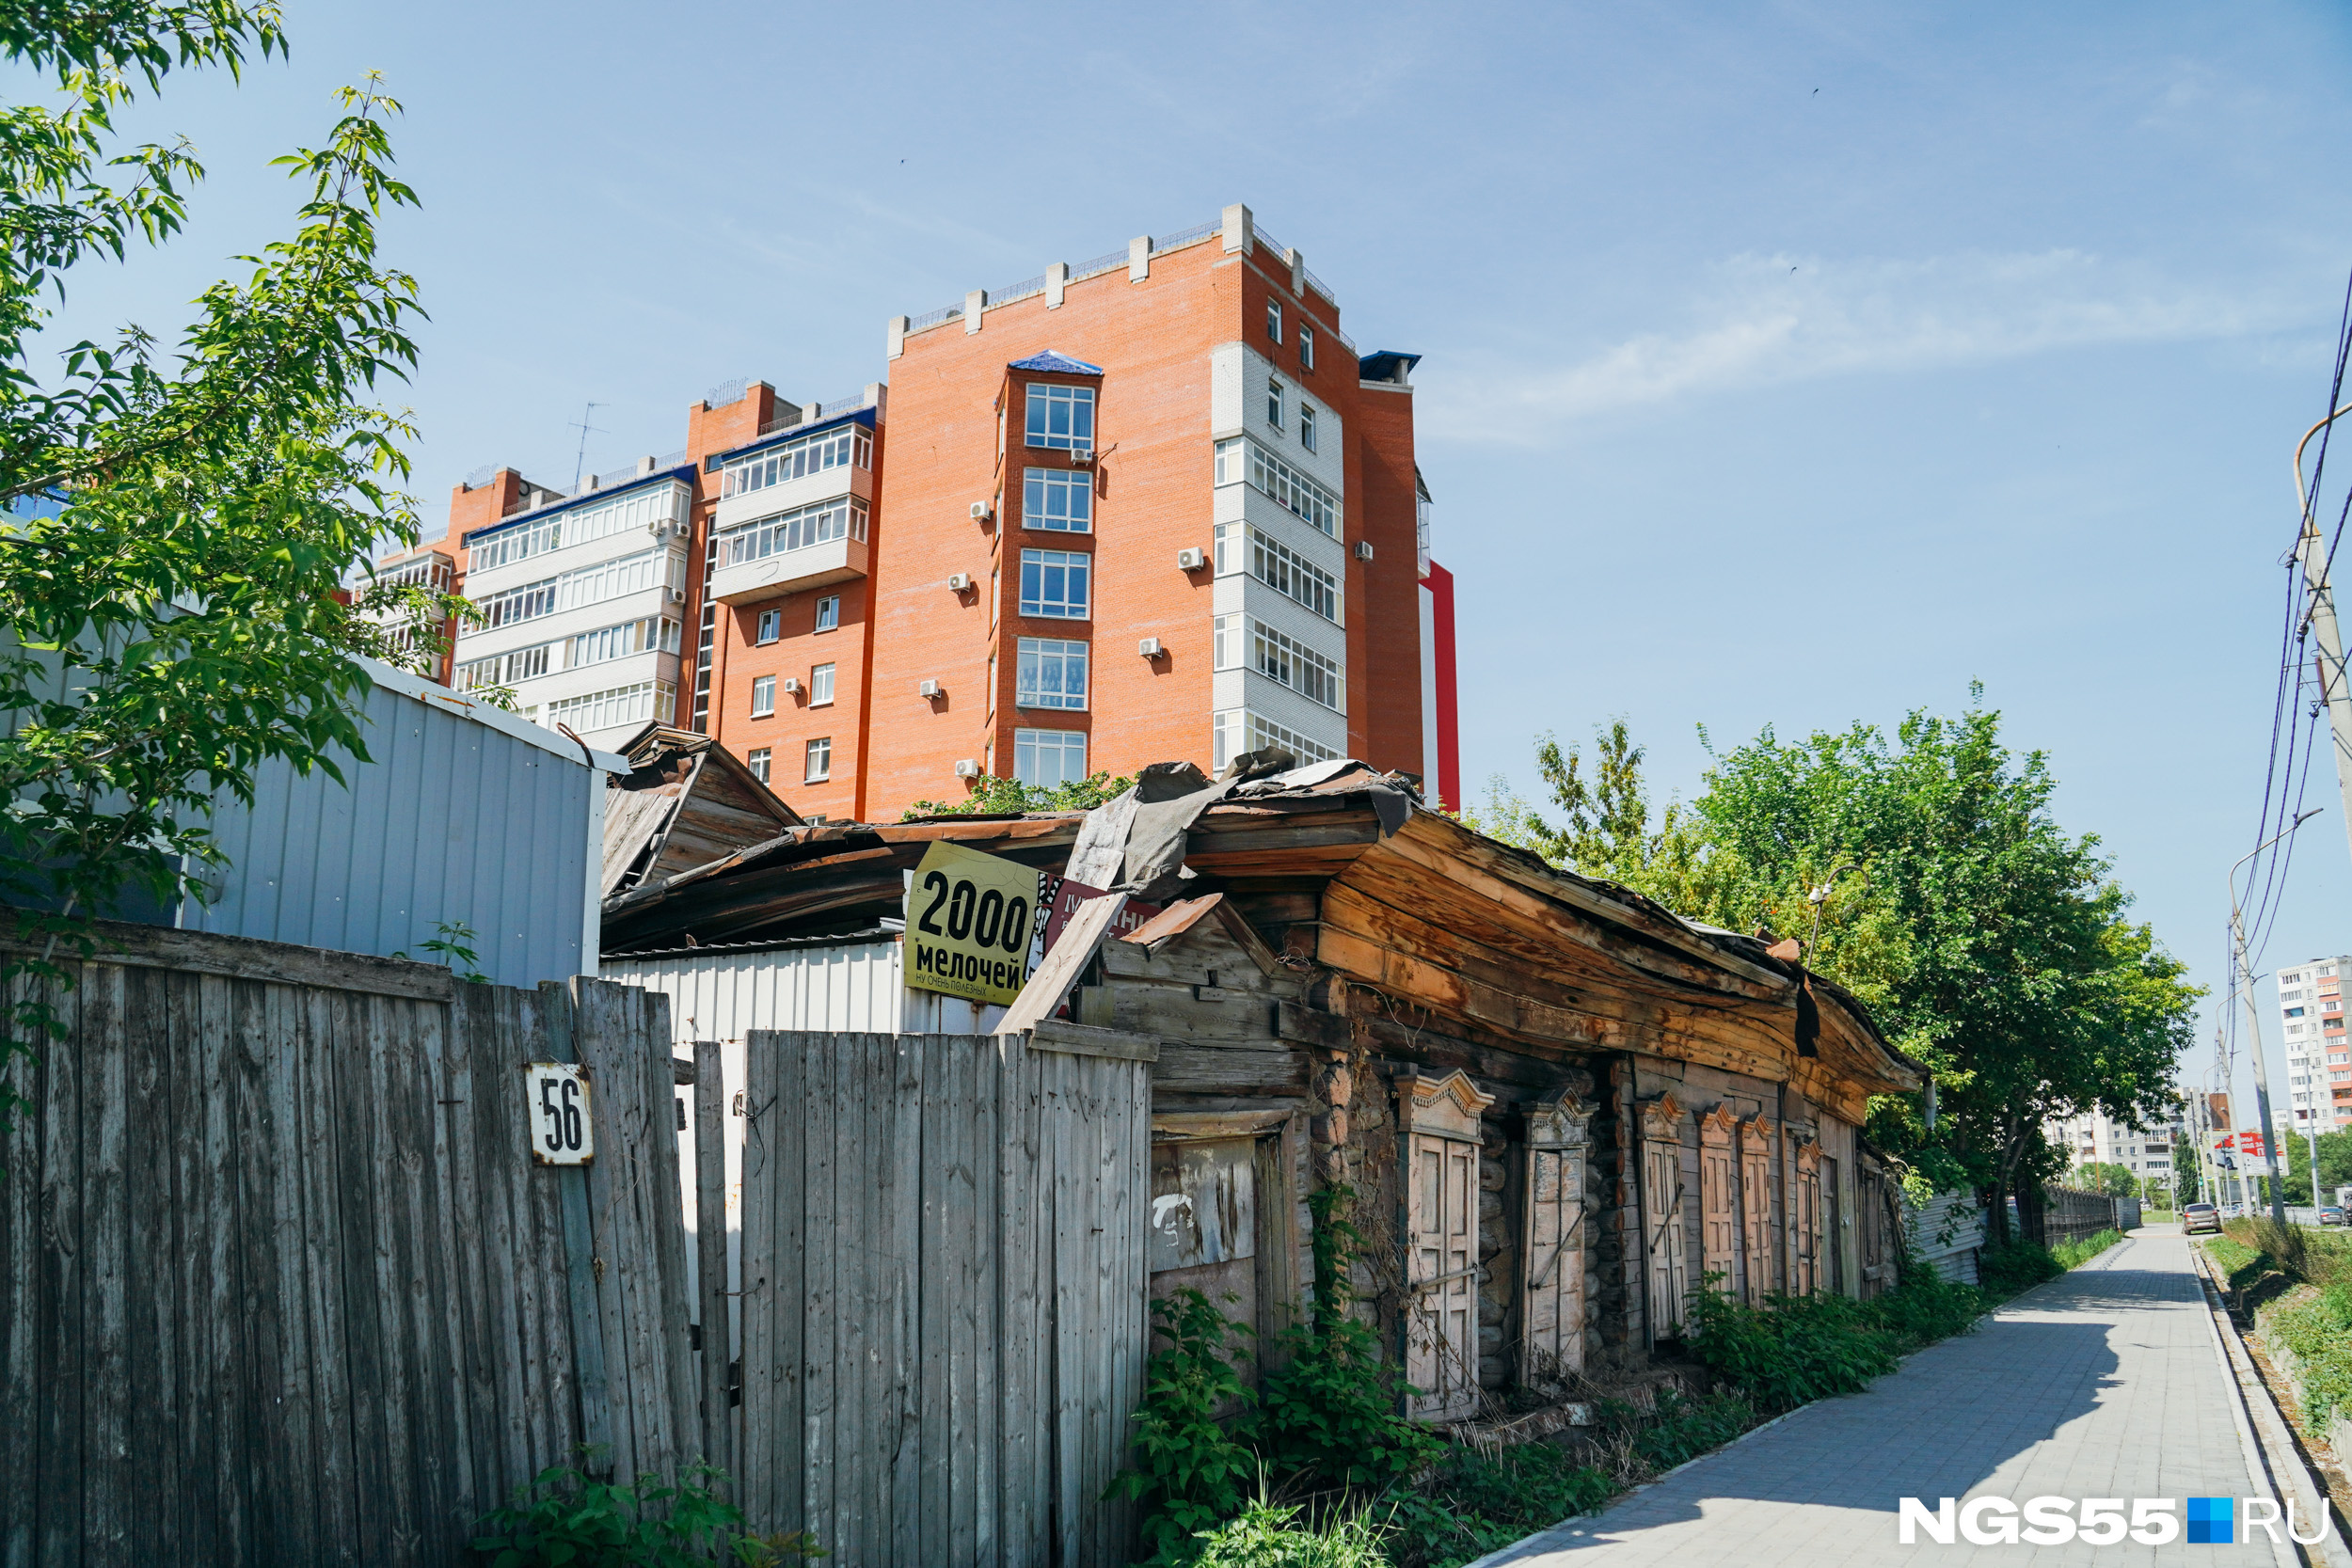 С другой стороны, со стороны улицы Булатова есть похожий вид на эту же многоэтажку, только фоном здесь выступает одноэтажный деревянный дом